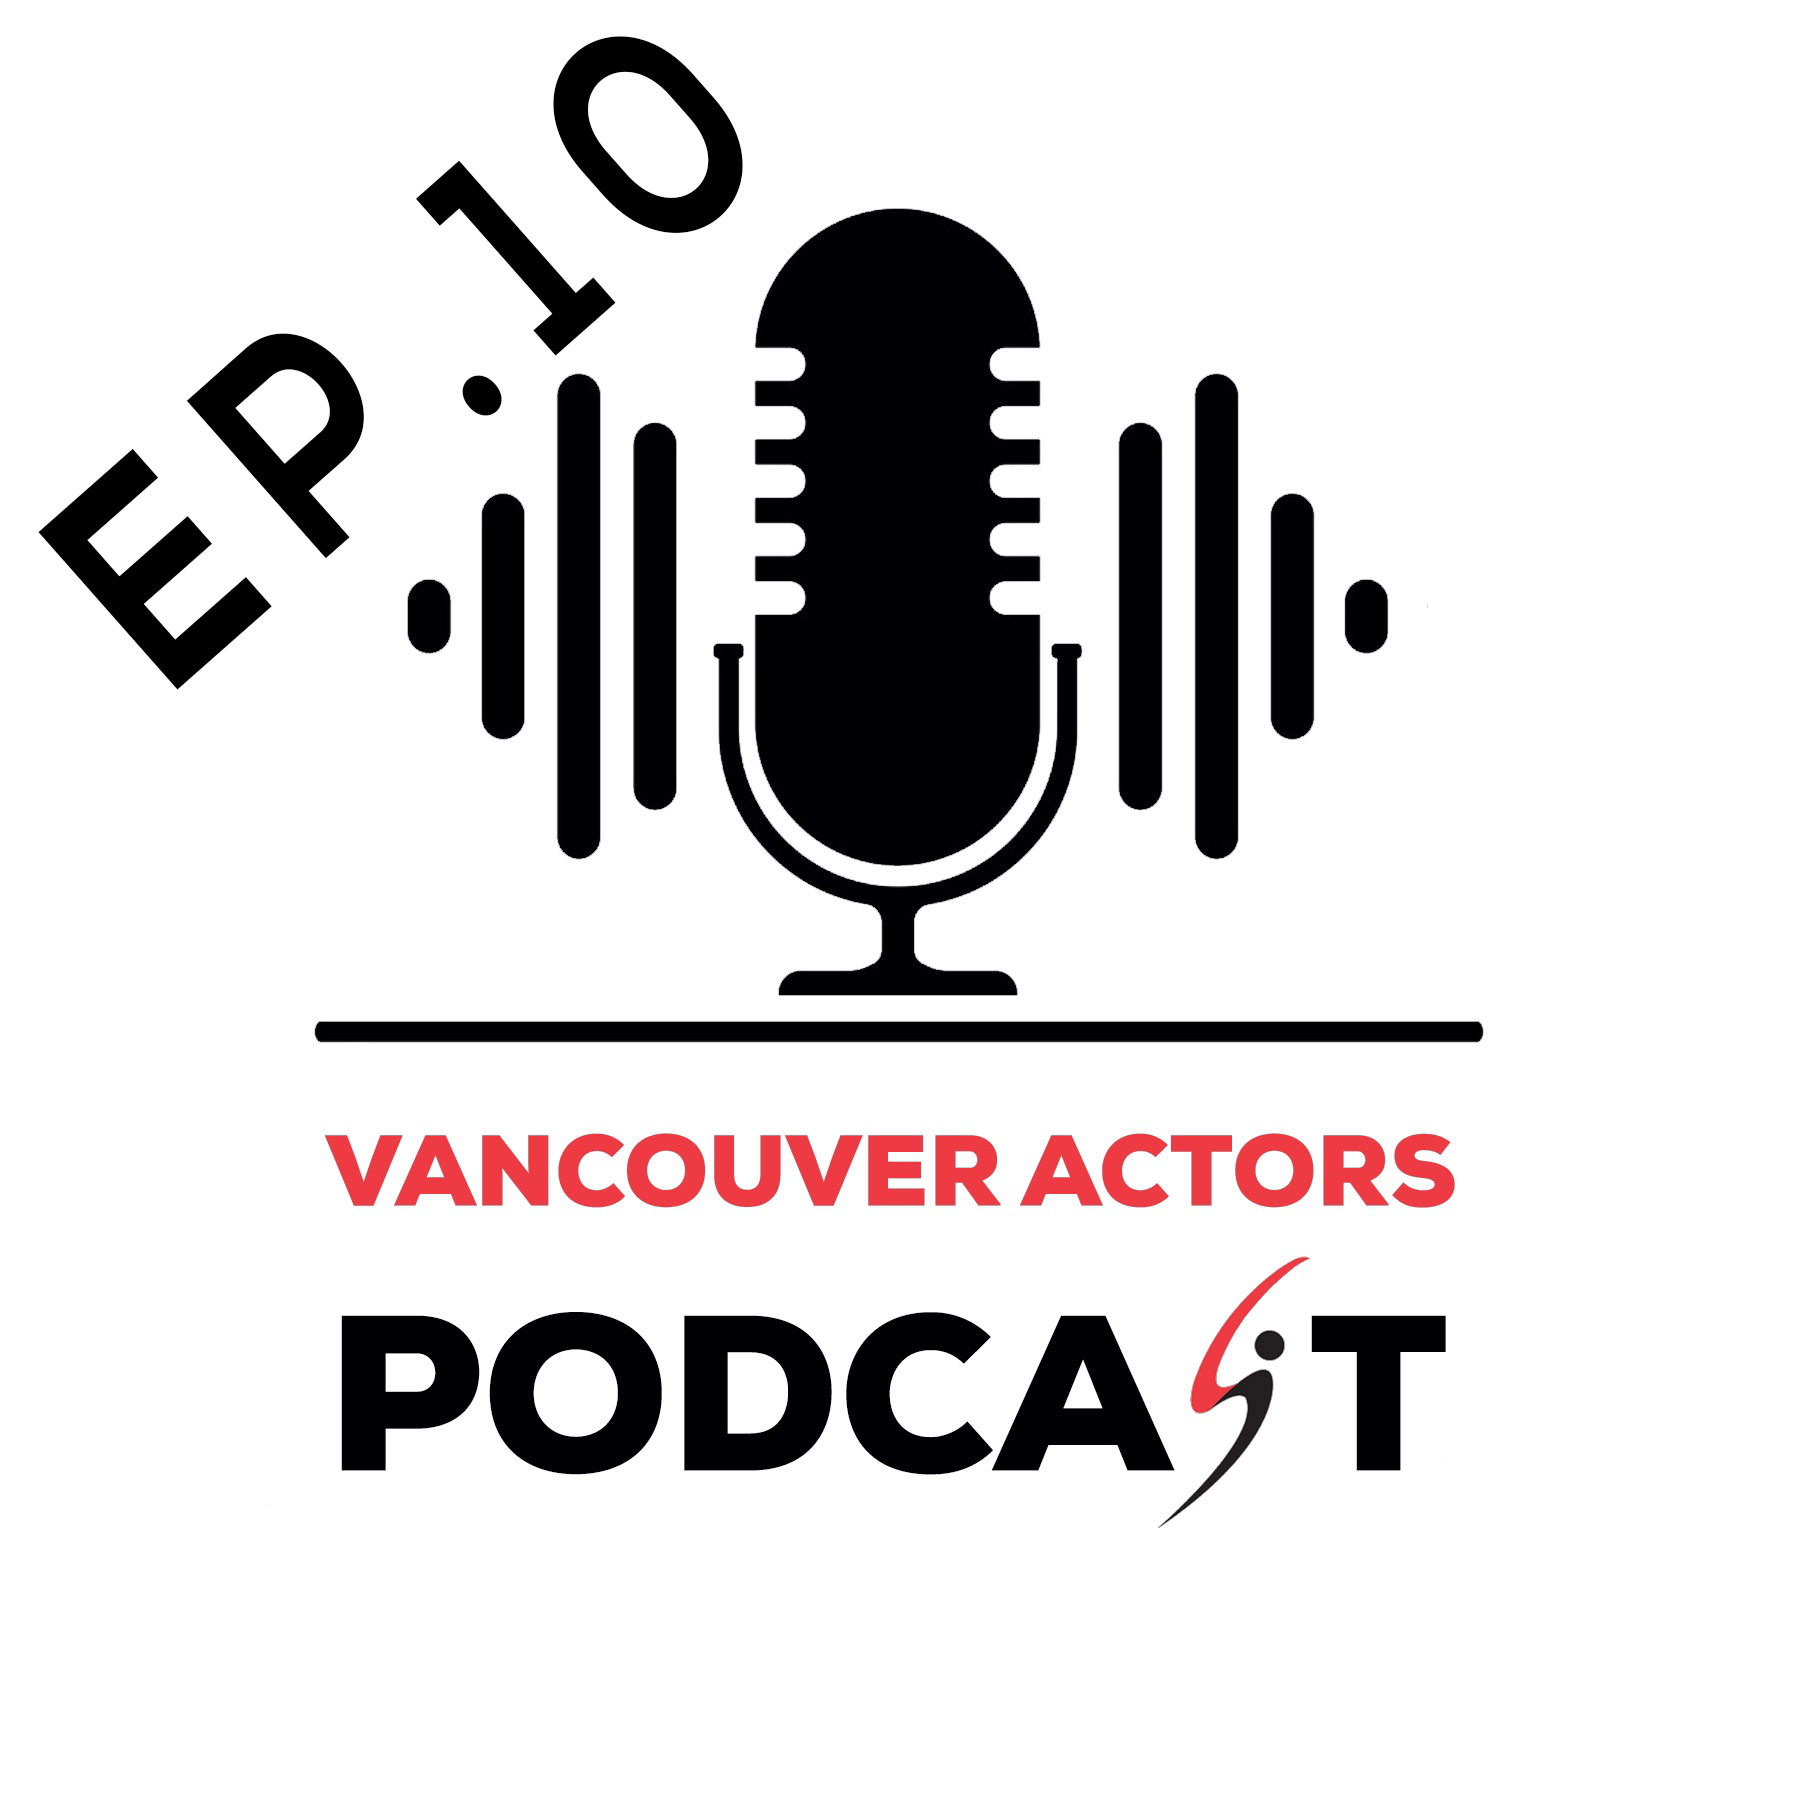 Vancouver Actors Podcast Michael Coleman Ep. 10